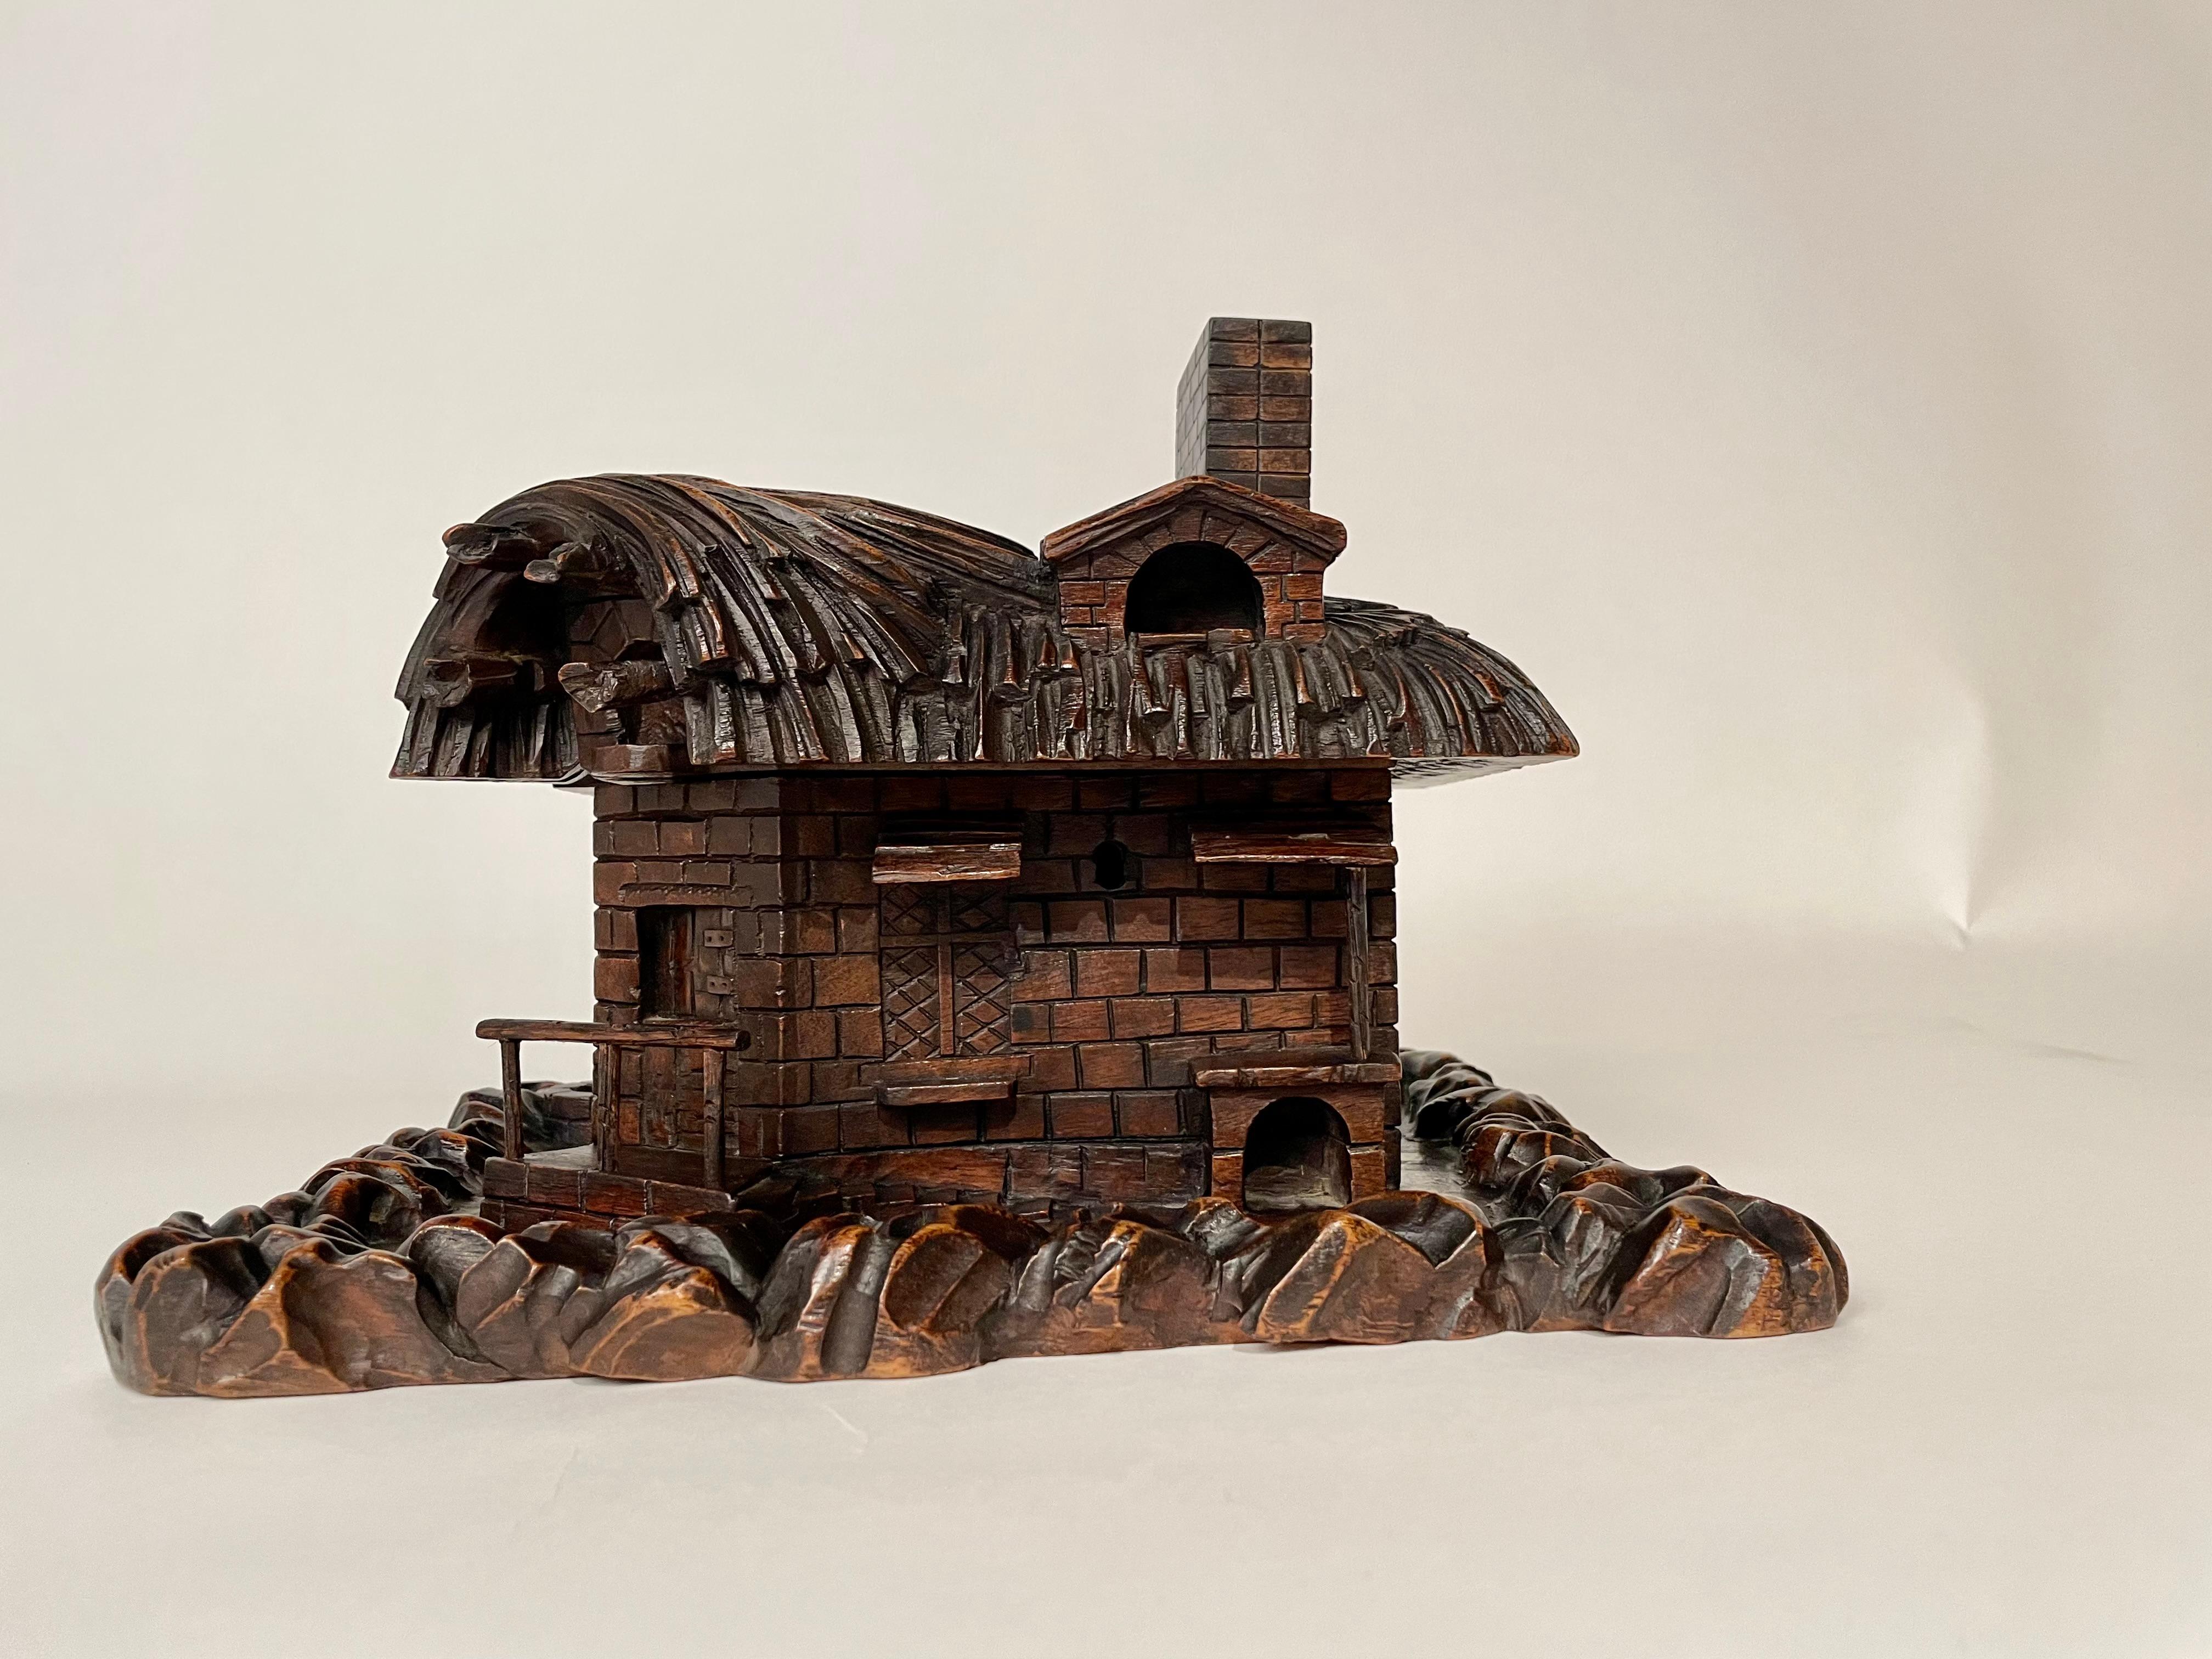 Fantastique et rare exemple d'art populaire de la Forêt-Noire, un tour de force de sculpture par un maître du bois. Cette boîte de toit élévateur en forme de chaumière présente de nombreux détails merveilleux. Les différentes surfaces des murs,